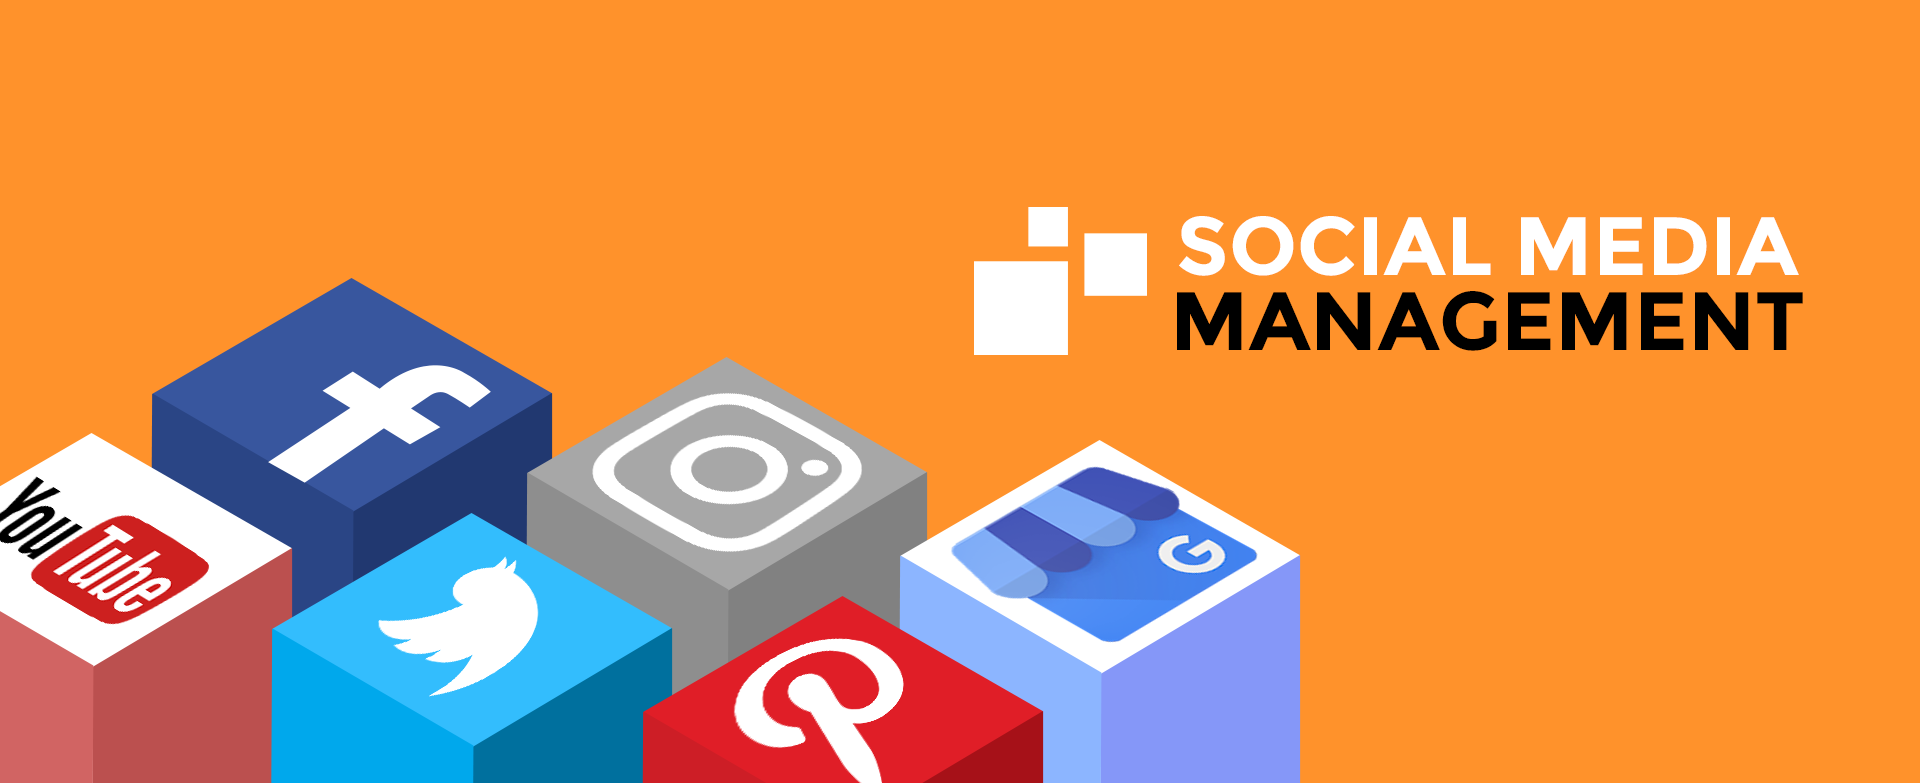 social media management agency, social media management, media management agency, social media agency, social agency, social media management agency, social, media, management, agency